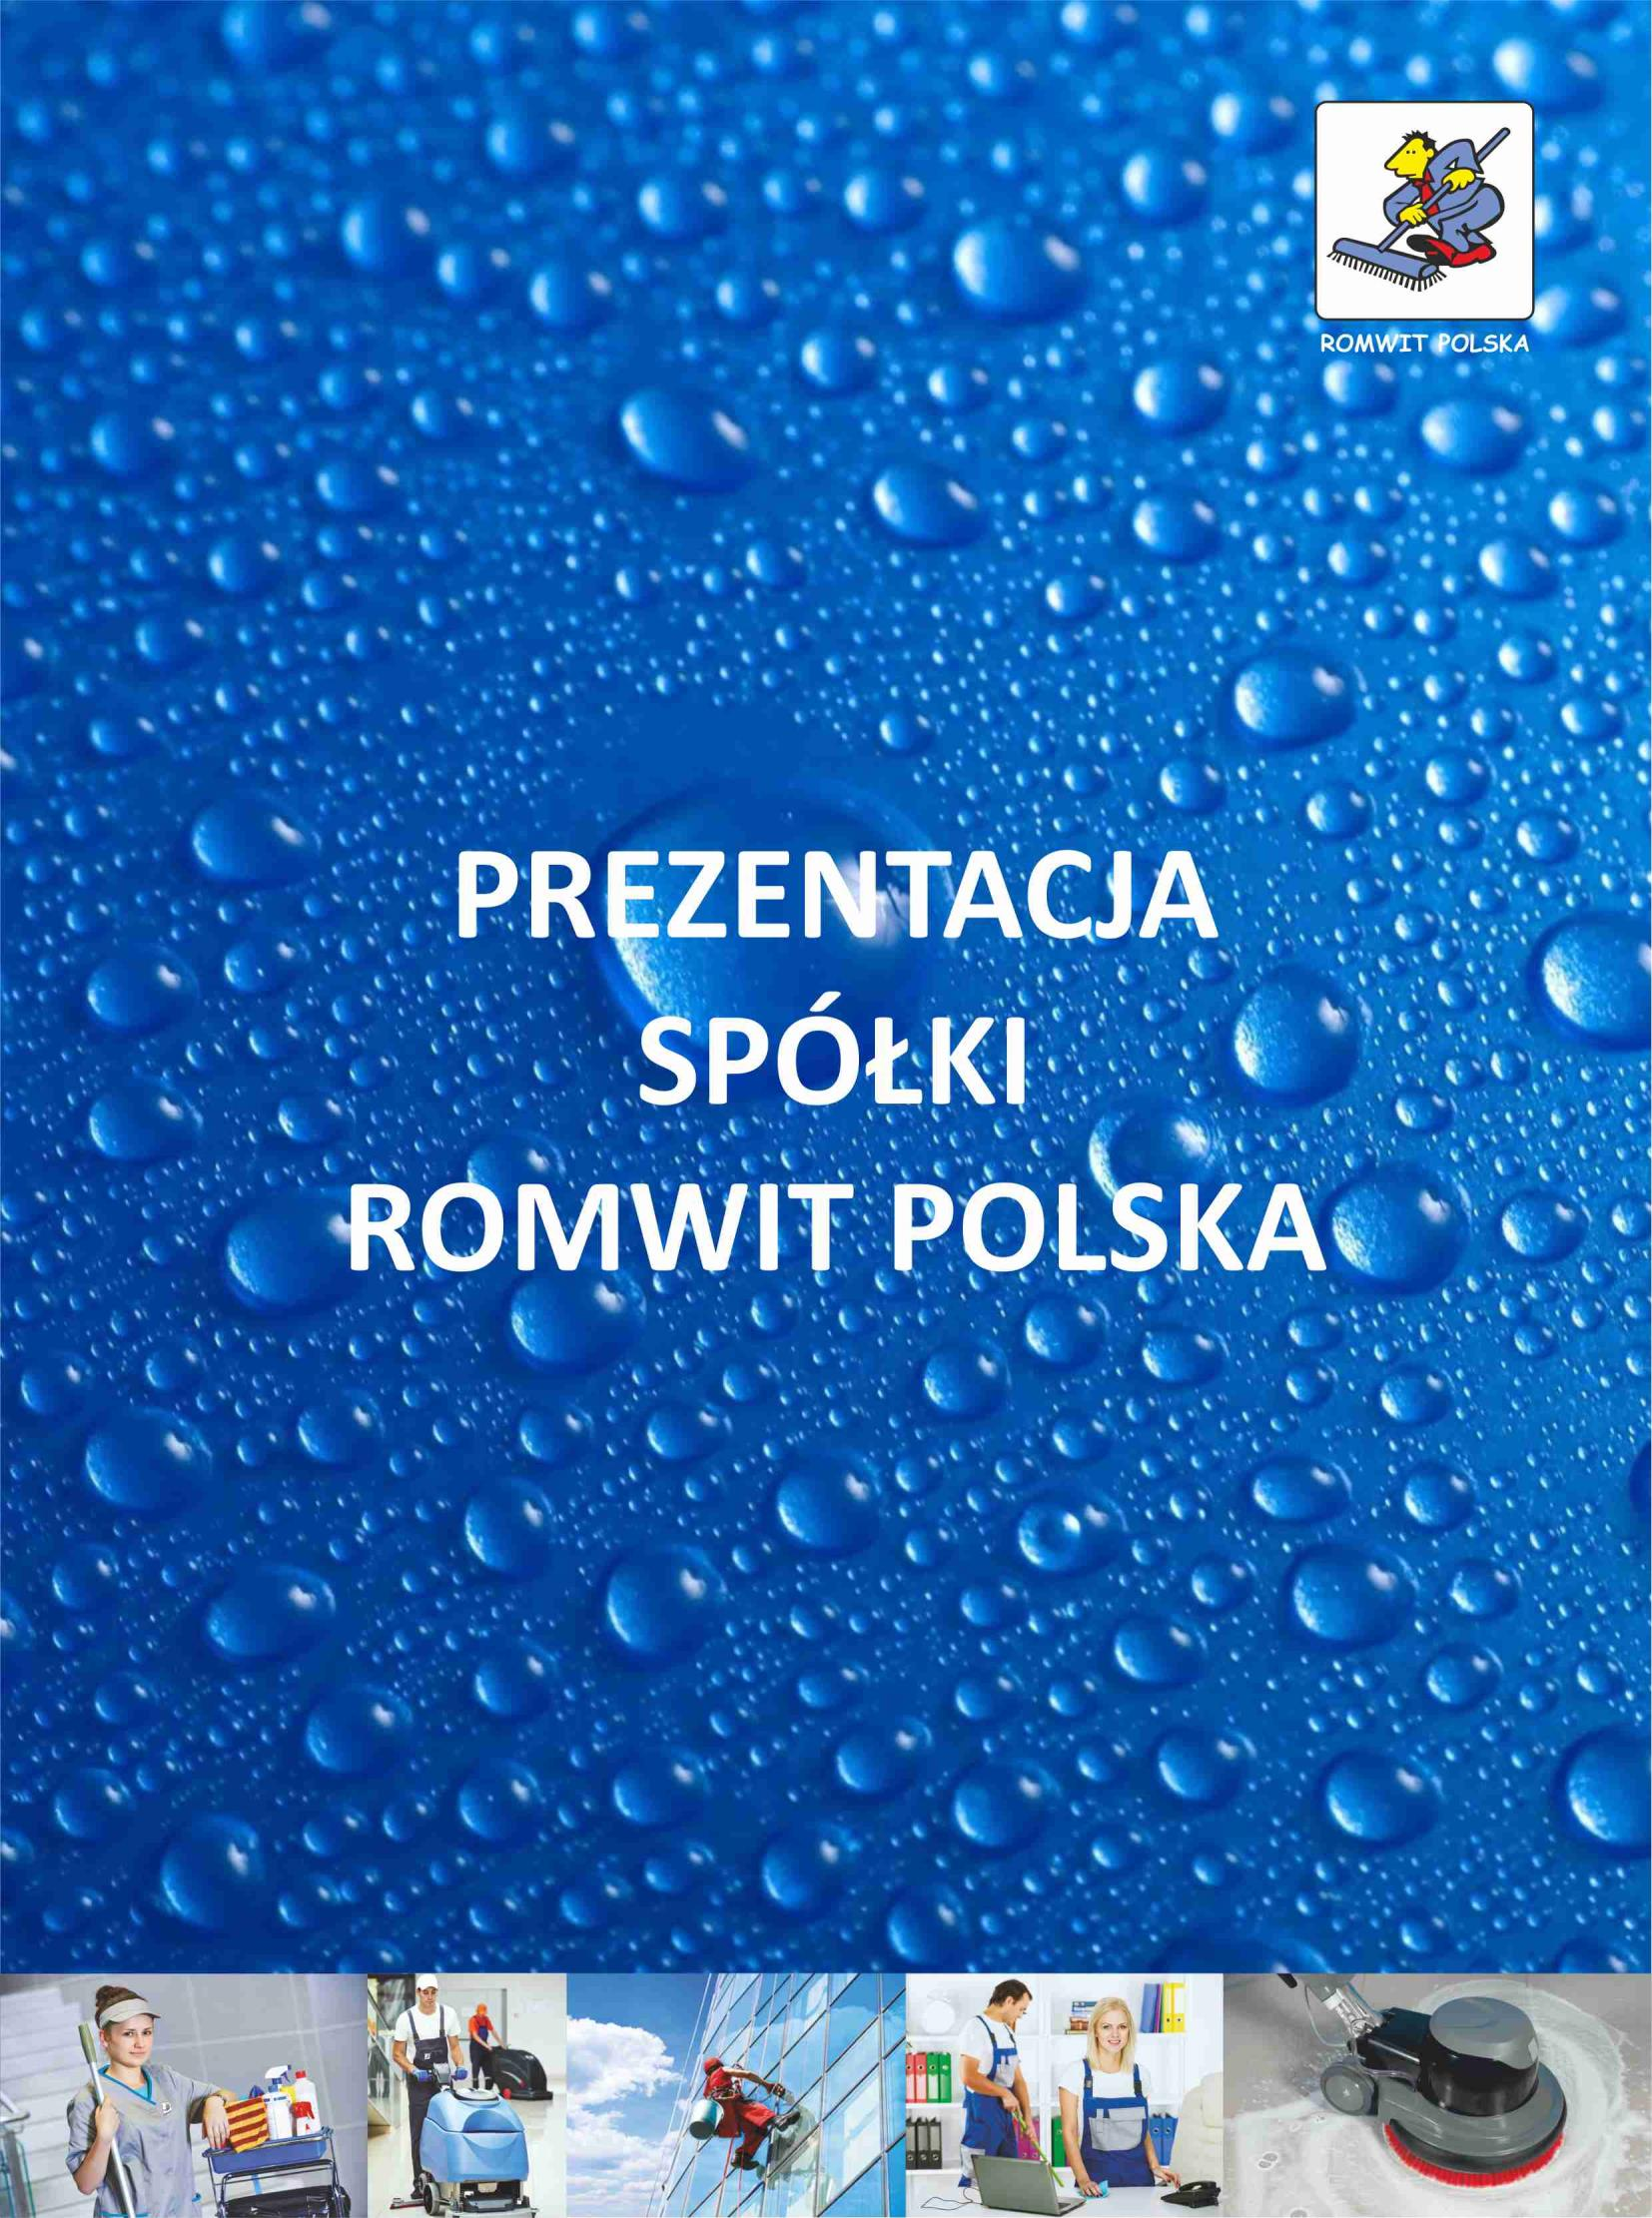 ROMWIT POLSKA Spółka z o.o. 62-030 Luboń, ul. Makuszyńskiego 4 Tel.